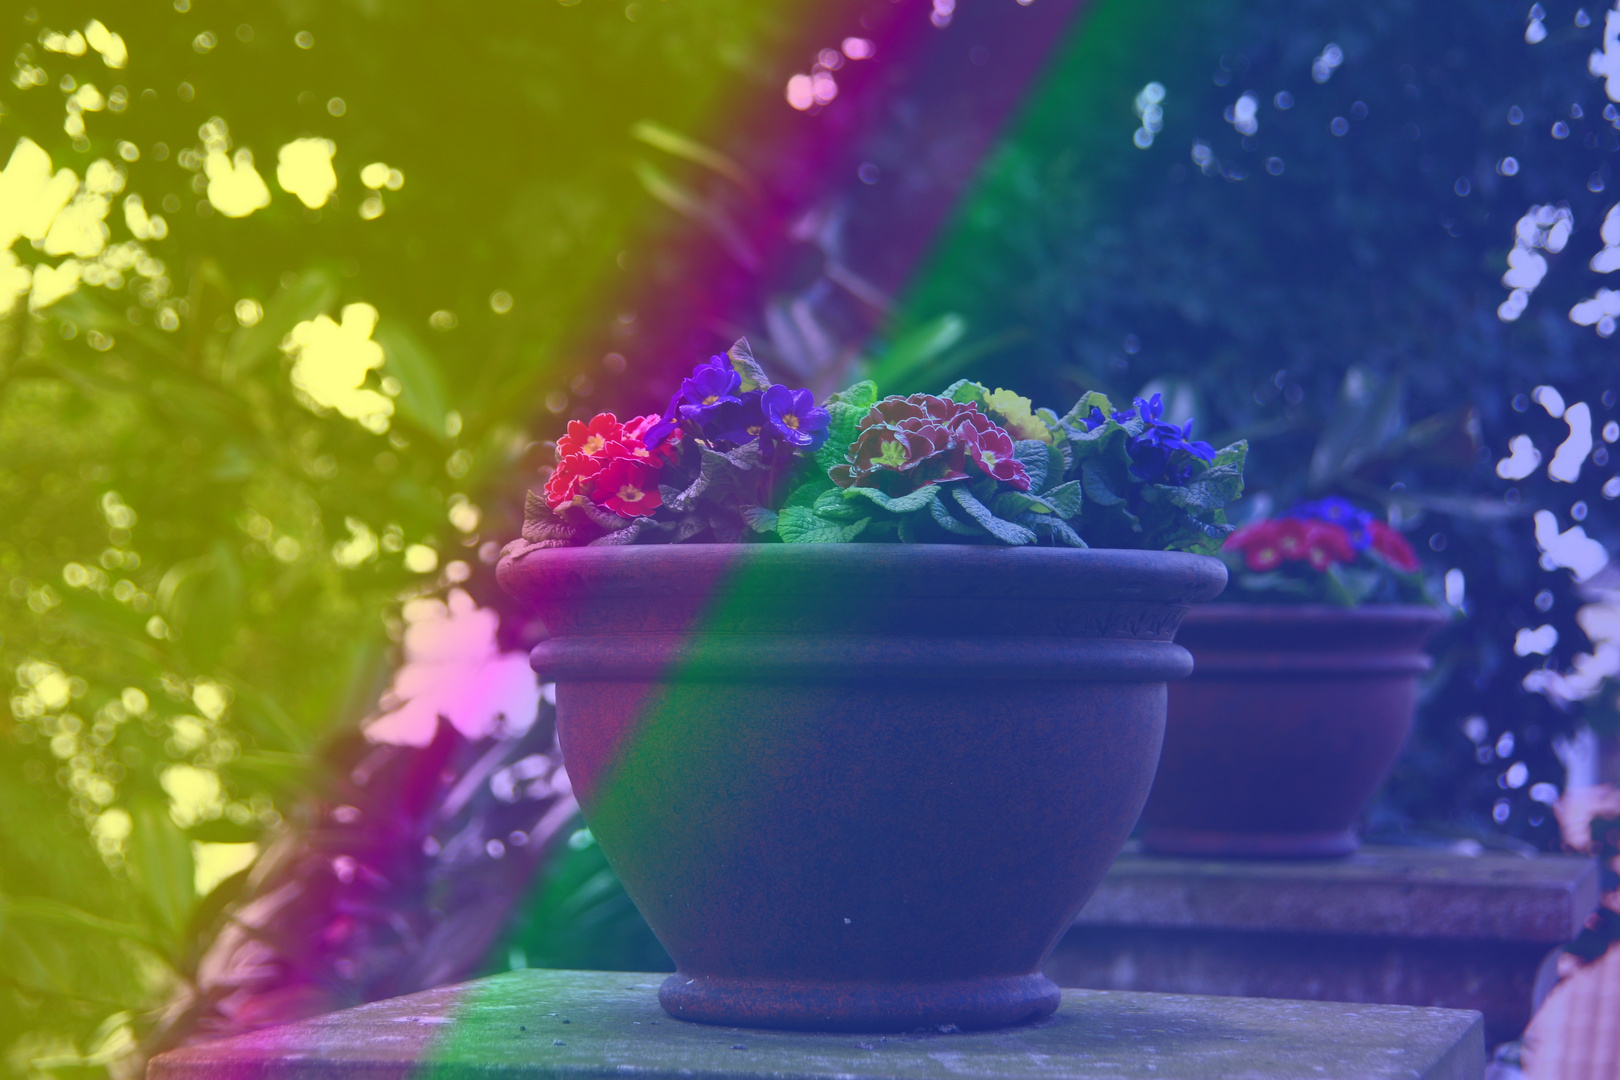 Regenbogen Blumen